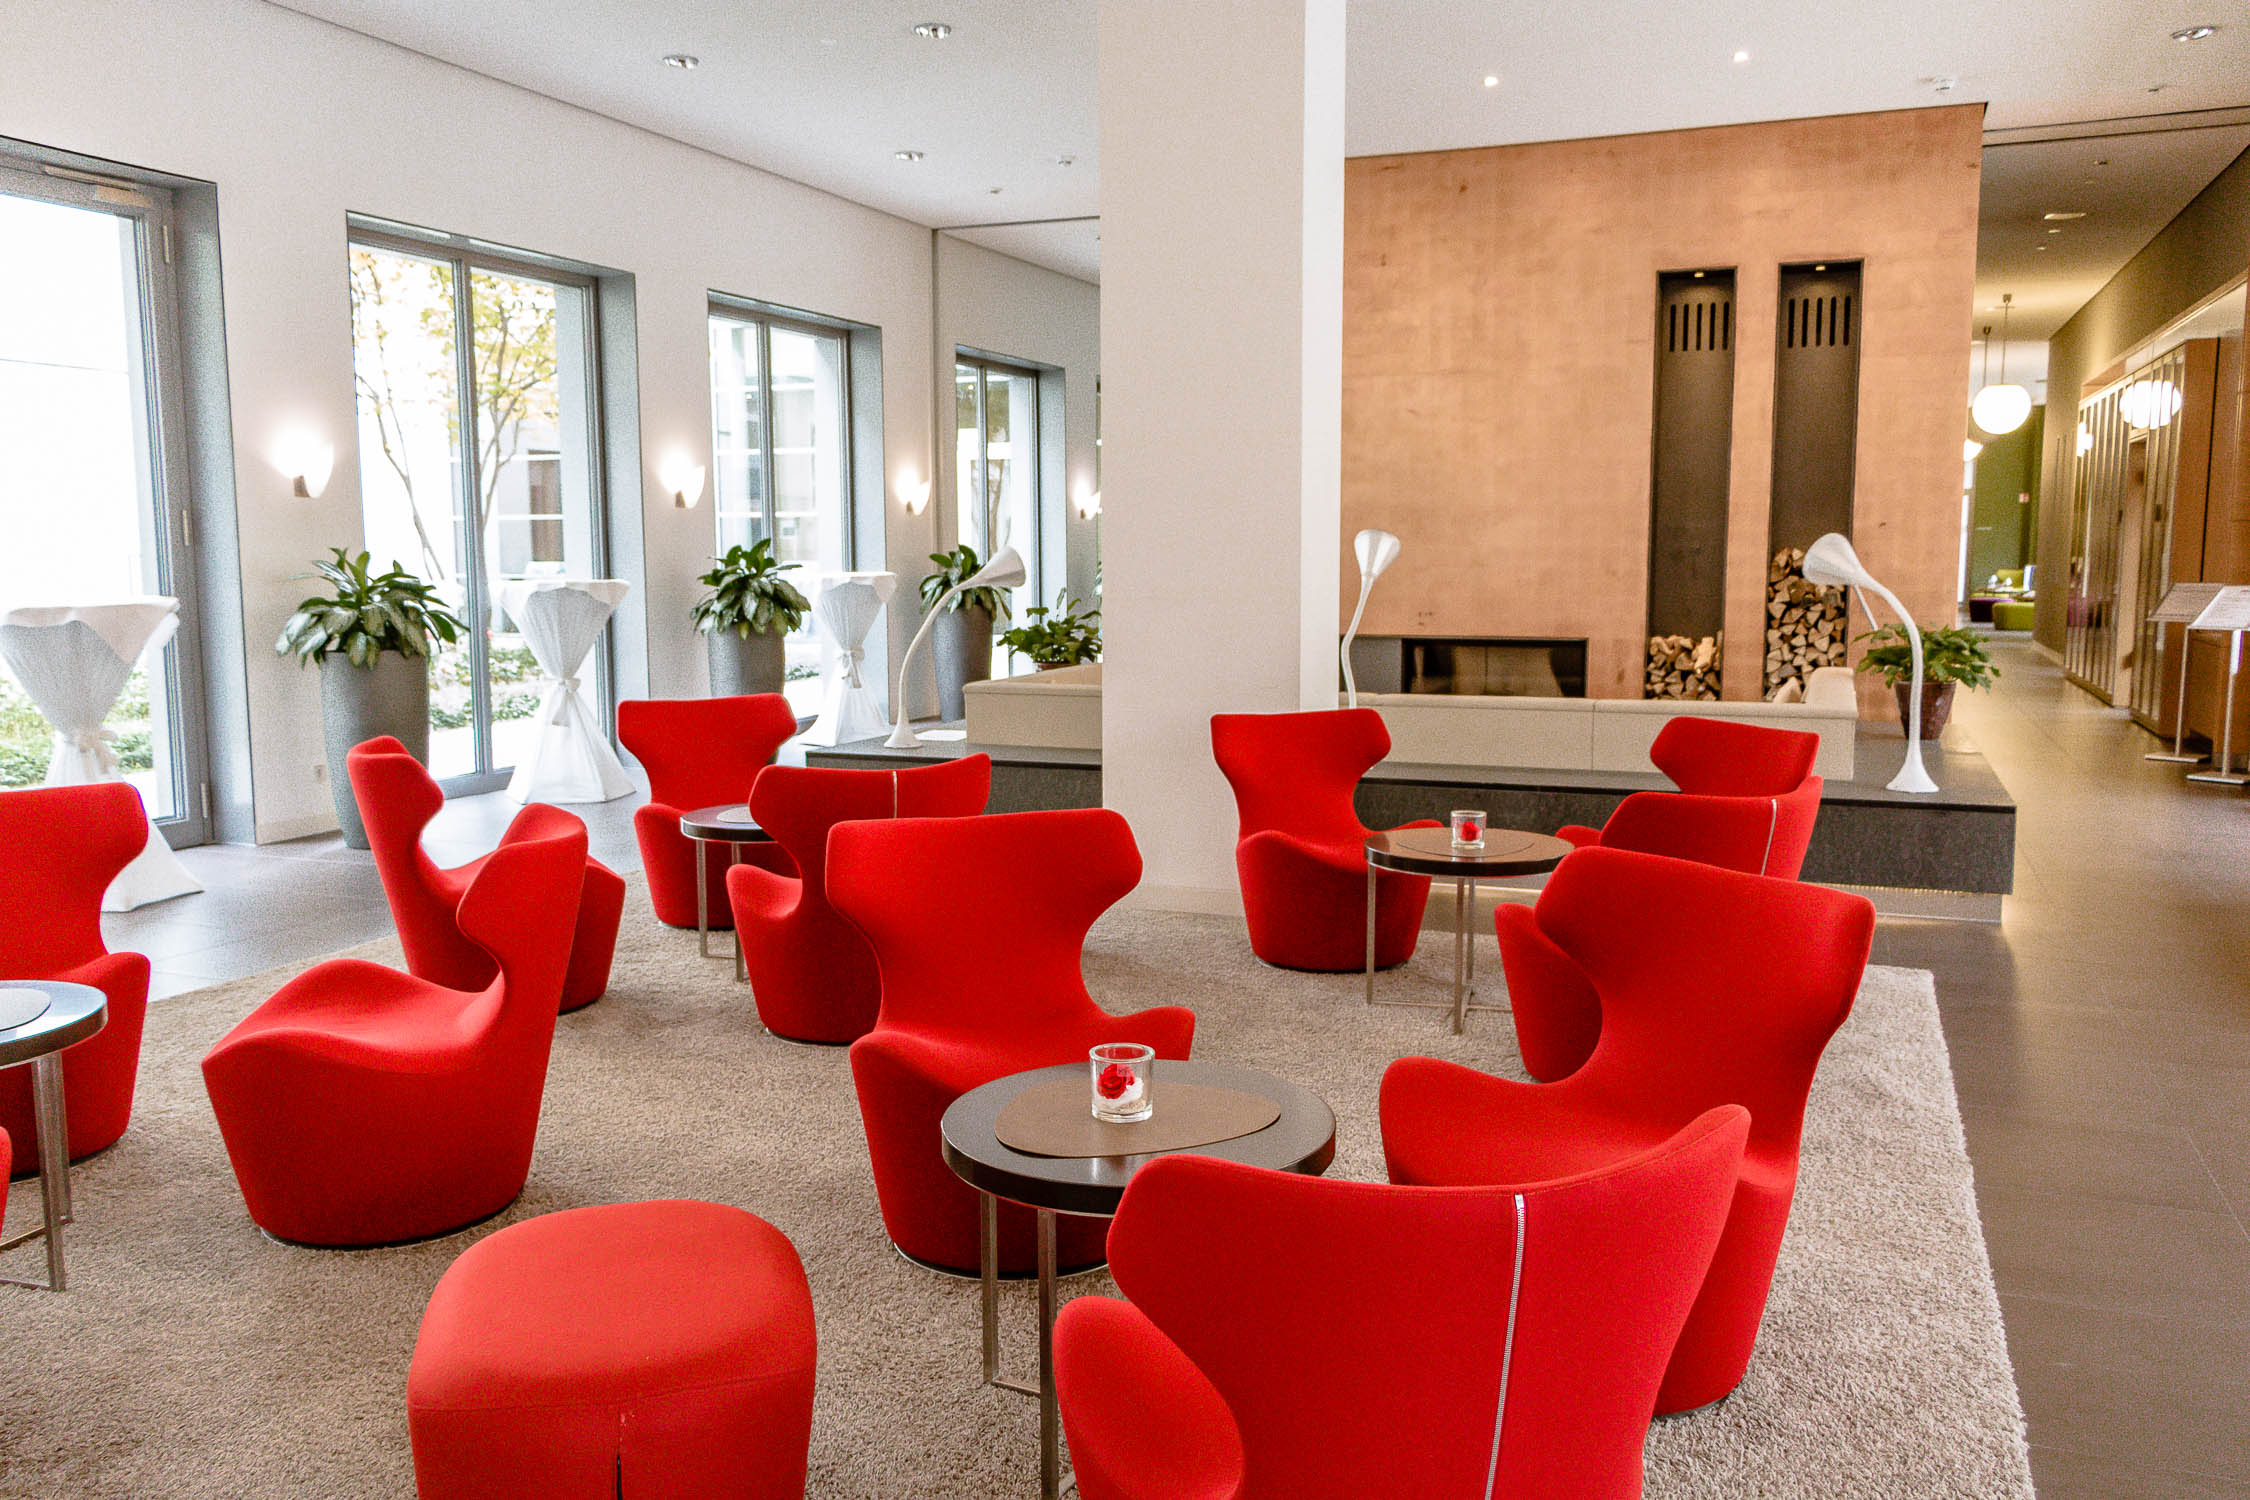 Das fünf Sterne Hotel Elbresidenz in Bad Schandau liegt direkt an der Elbe in der Sächsischen Schweiz, Wellness, Fitness, Tagungshotel, gehobene Gourmet-Küche,